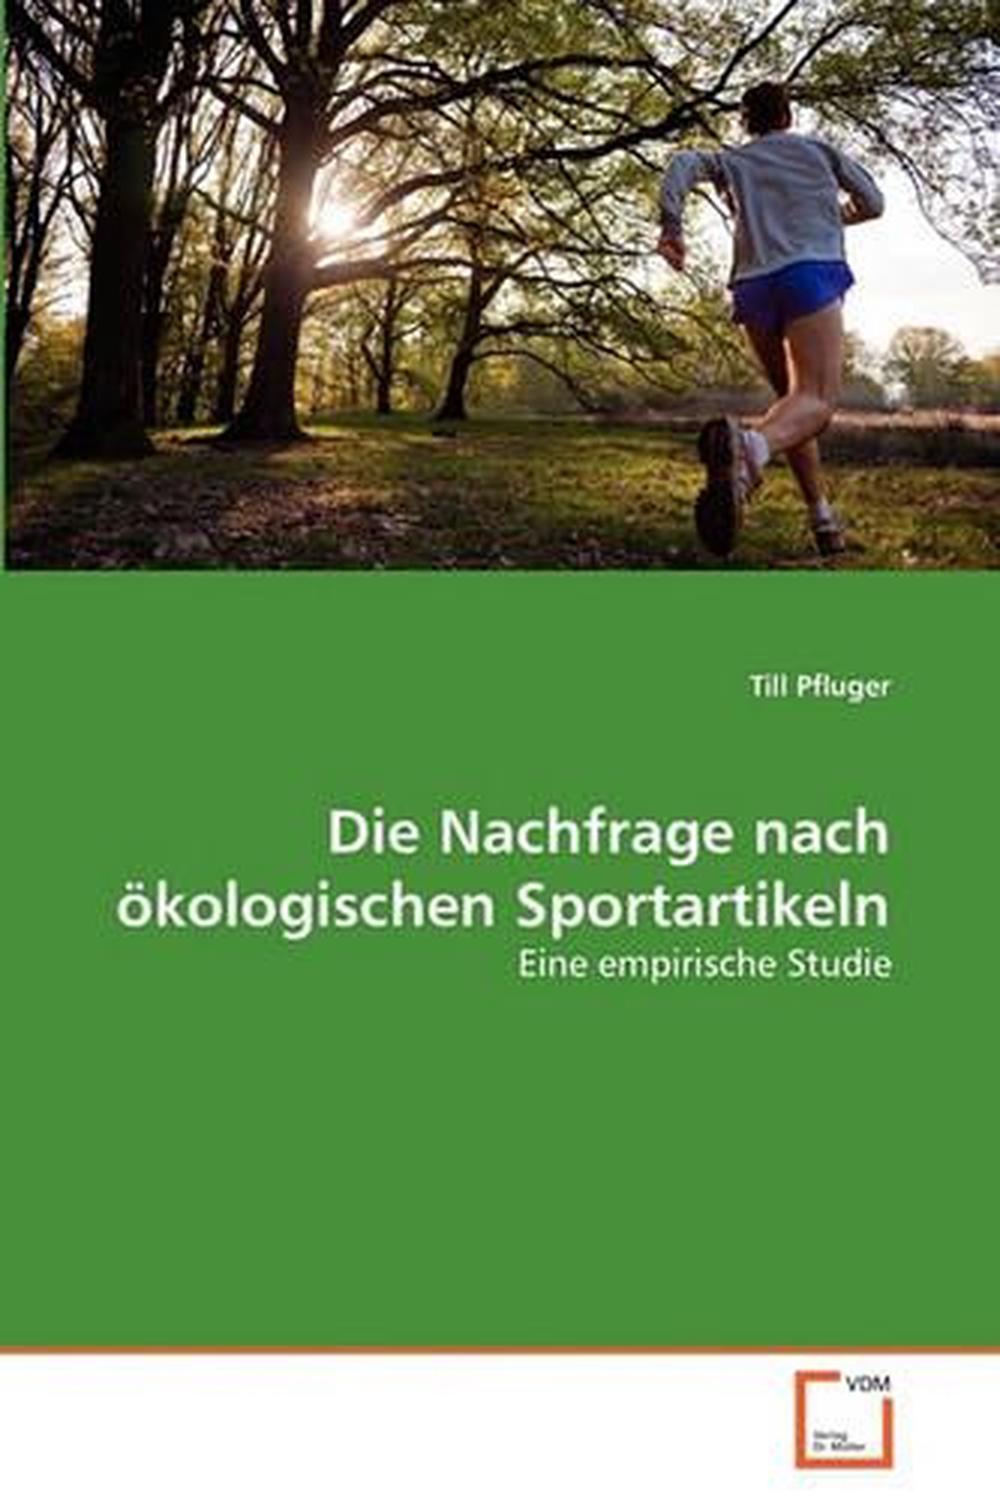 Die Nachfrage Nach Kologischen Sportartikeln: Eine empirische Studie by Till Pfl - Picture 1 of 1